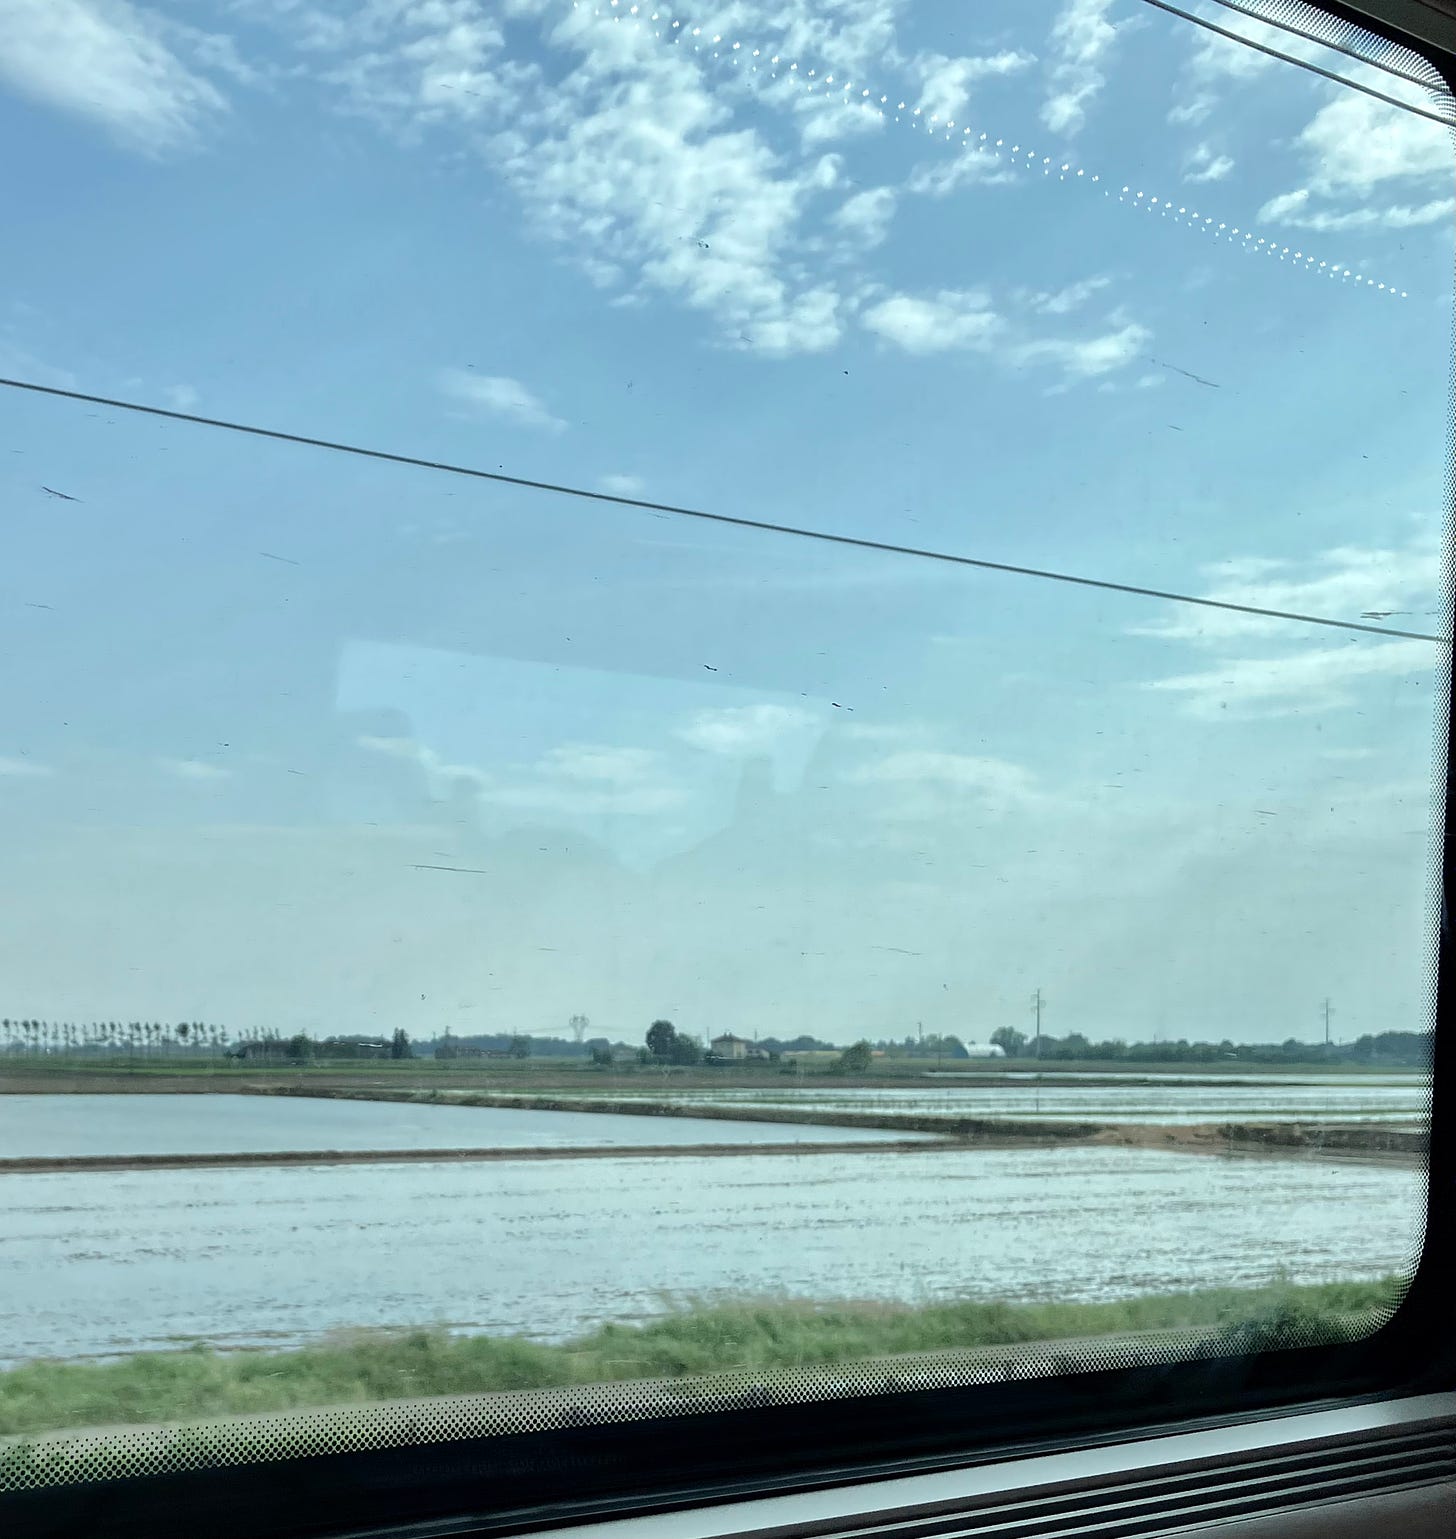 Da janela do trem, duas plantações inundadas de água. É possível ver o céu e a janela do trem.